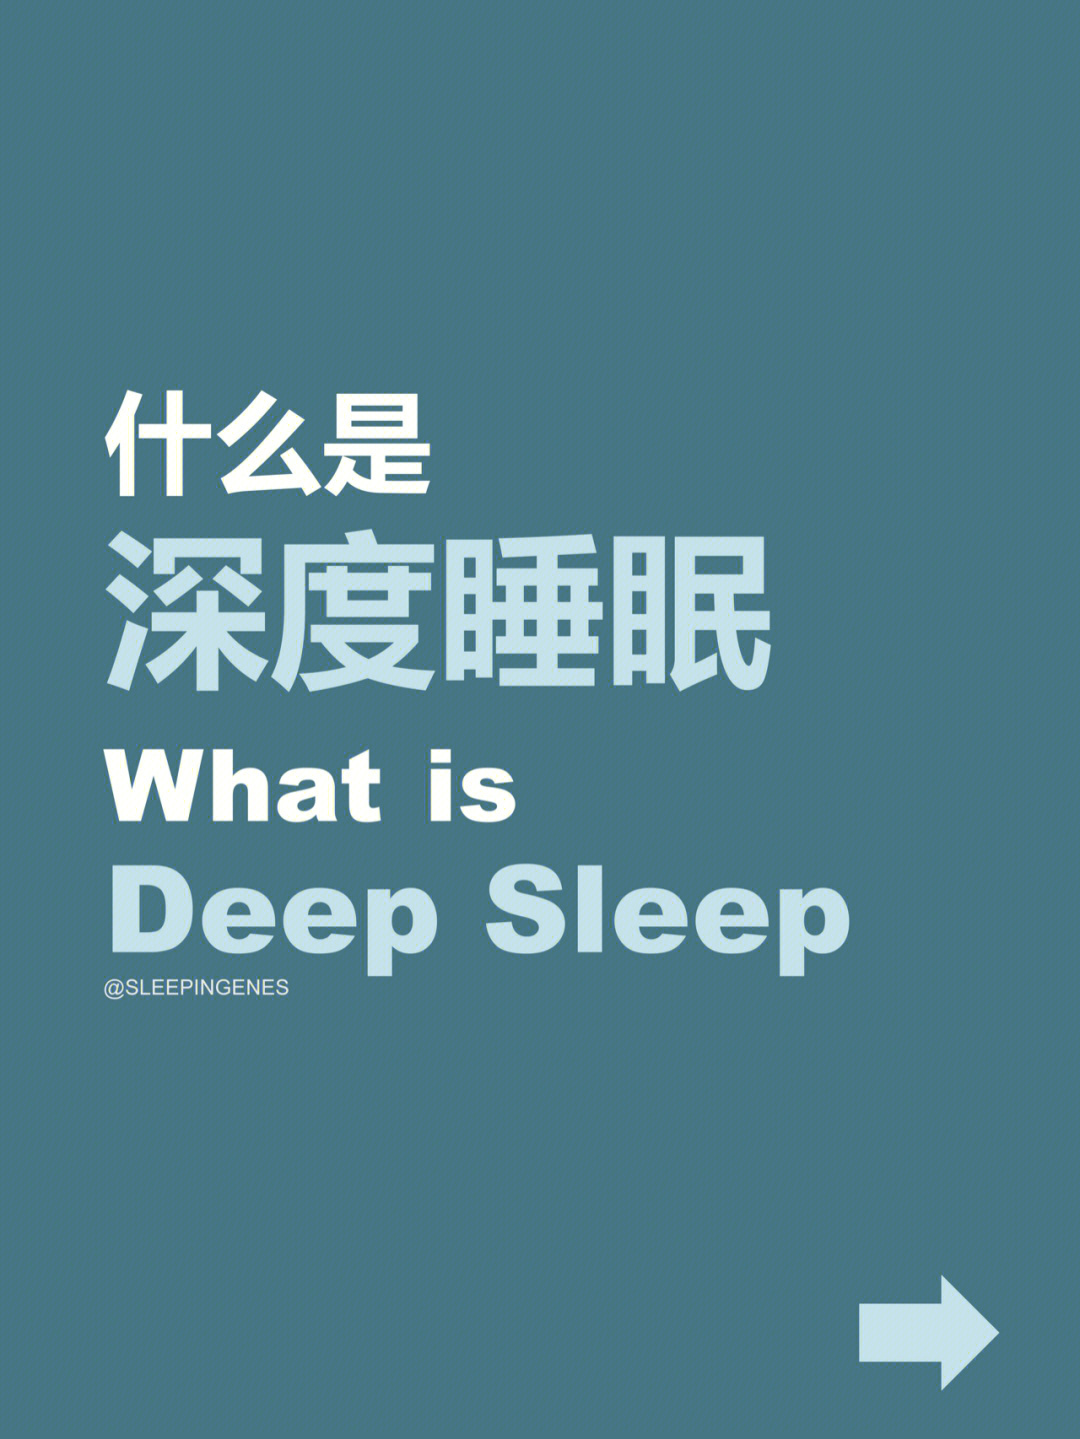 深度睡眠基本概念以及如何获得